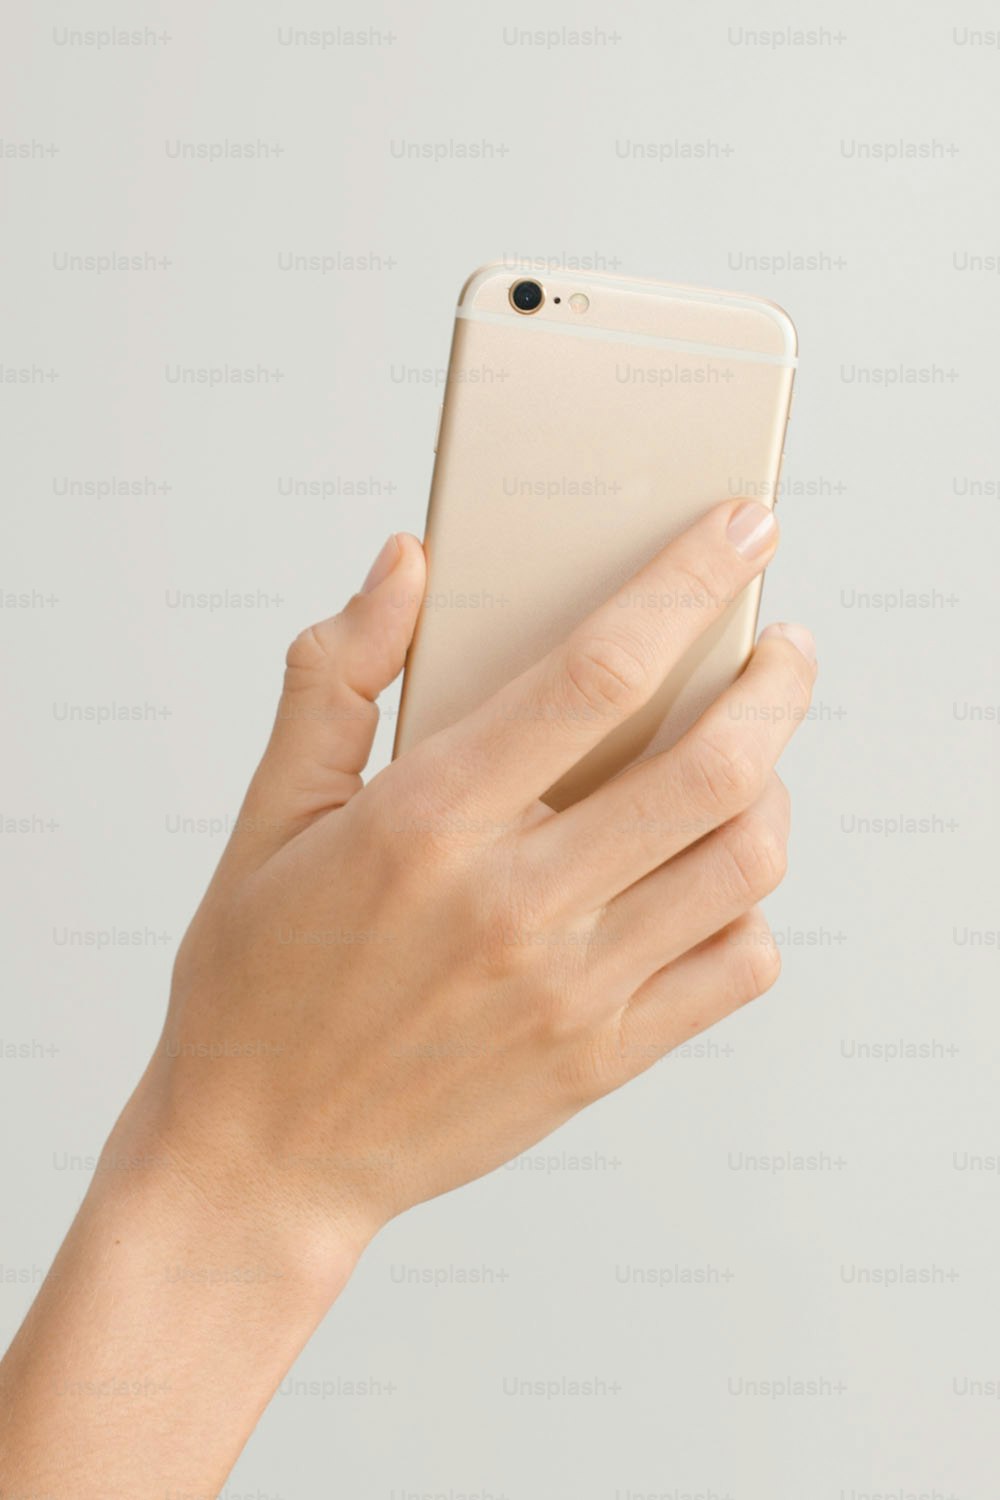 una persona sosteniendo un teléfono celular en la mano